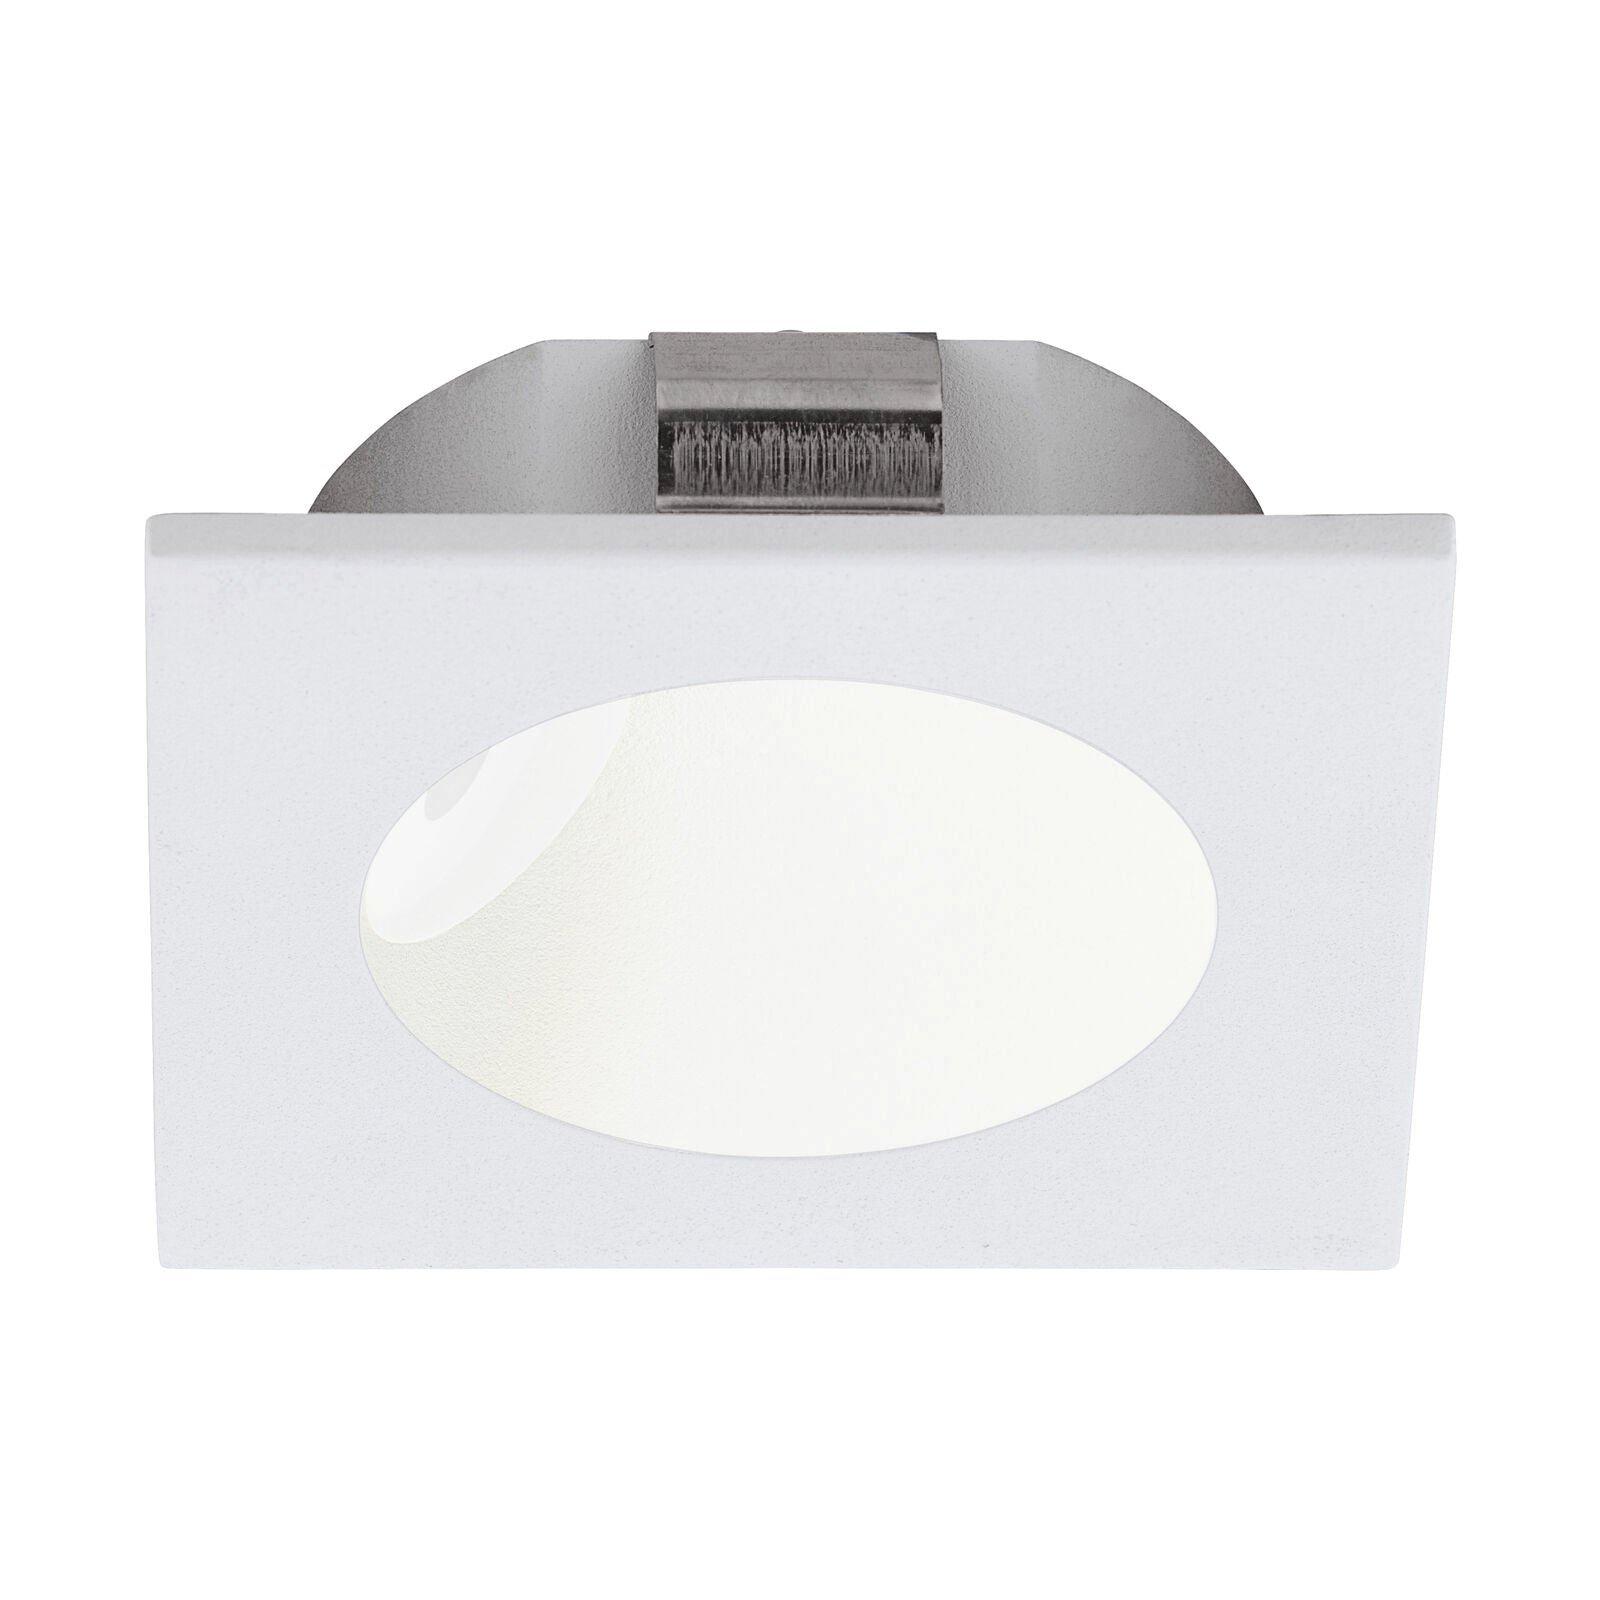 Wall / Ceiling Flush Downlight White Cast Aluminium 2W Built in LED